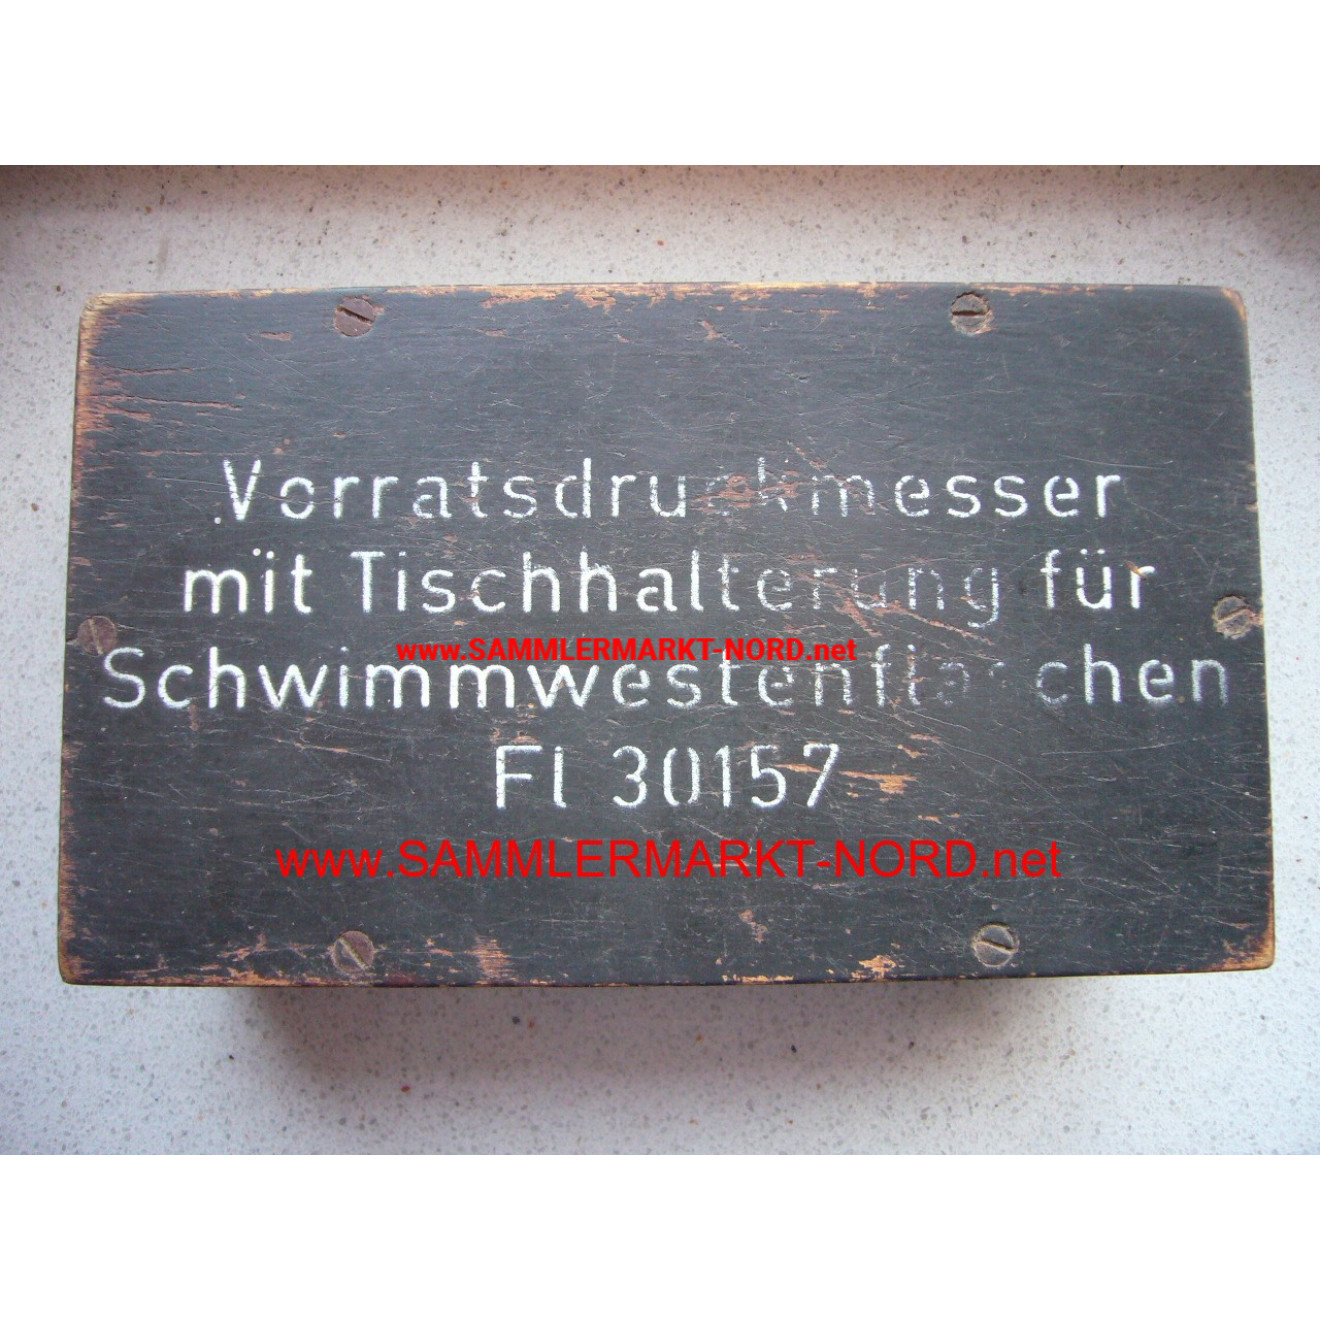 Luftwaffe - Kiste für Vorratsdruckmesser mit Tischhalterung für 